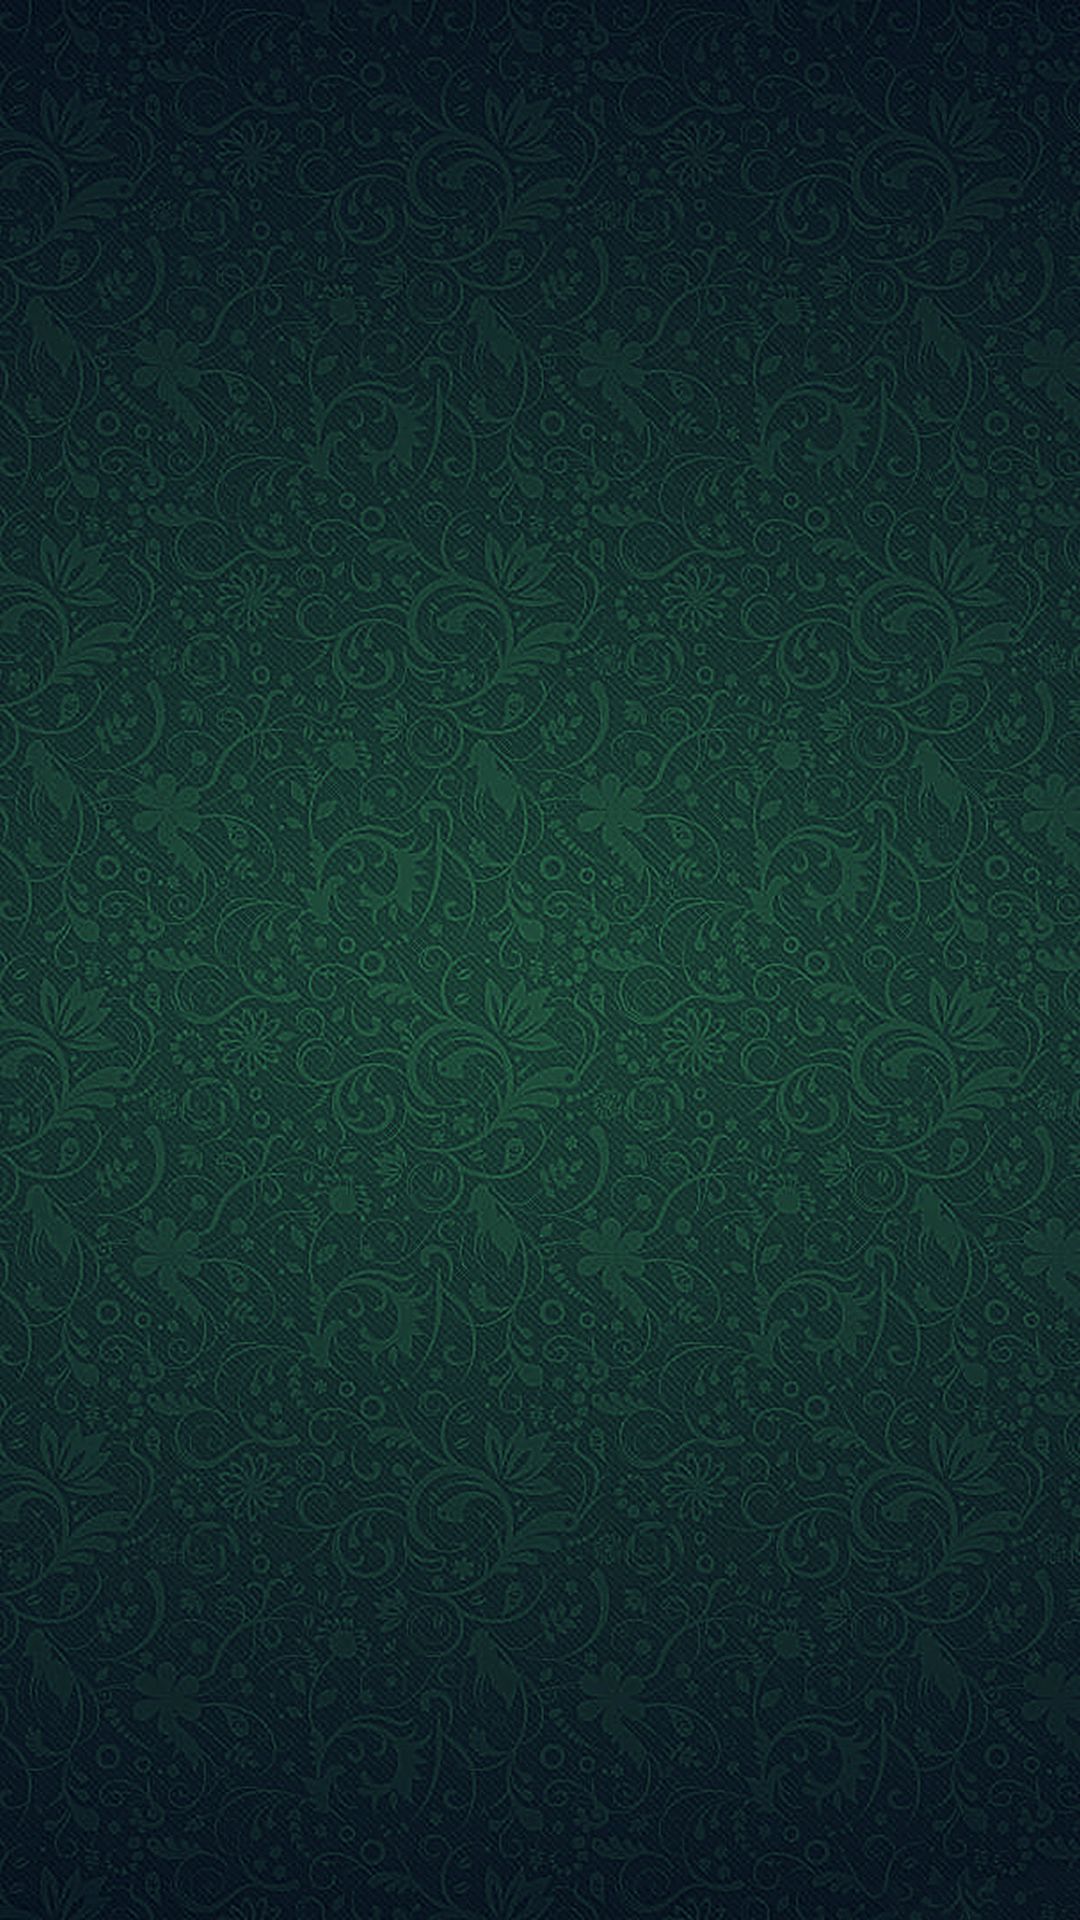 texturas wallpaper,green,black,aqua,turquoise,teal